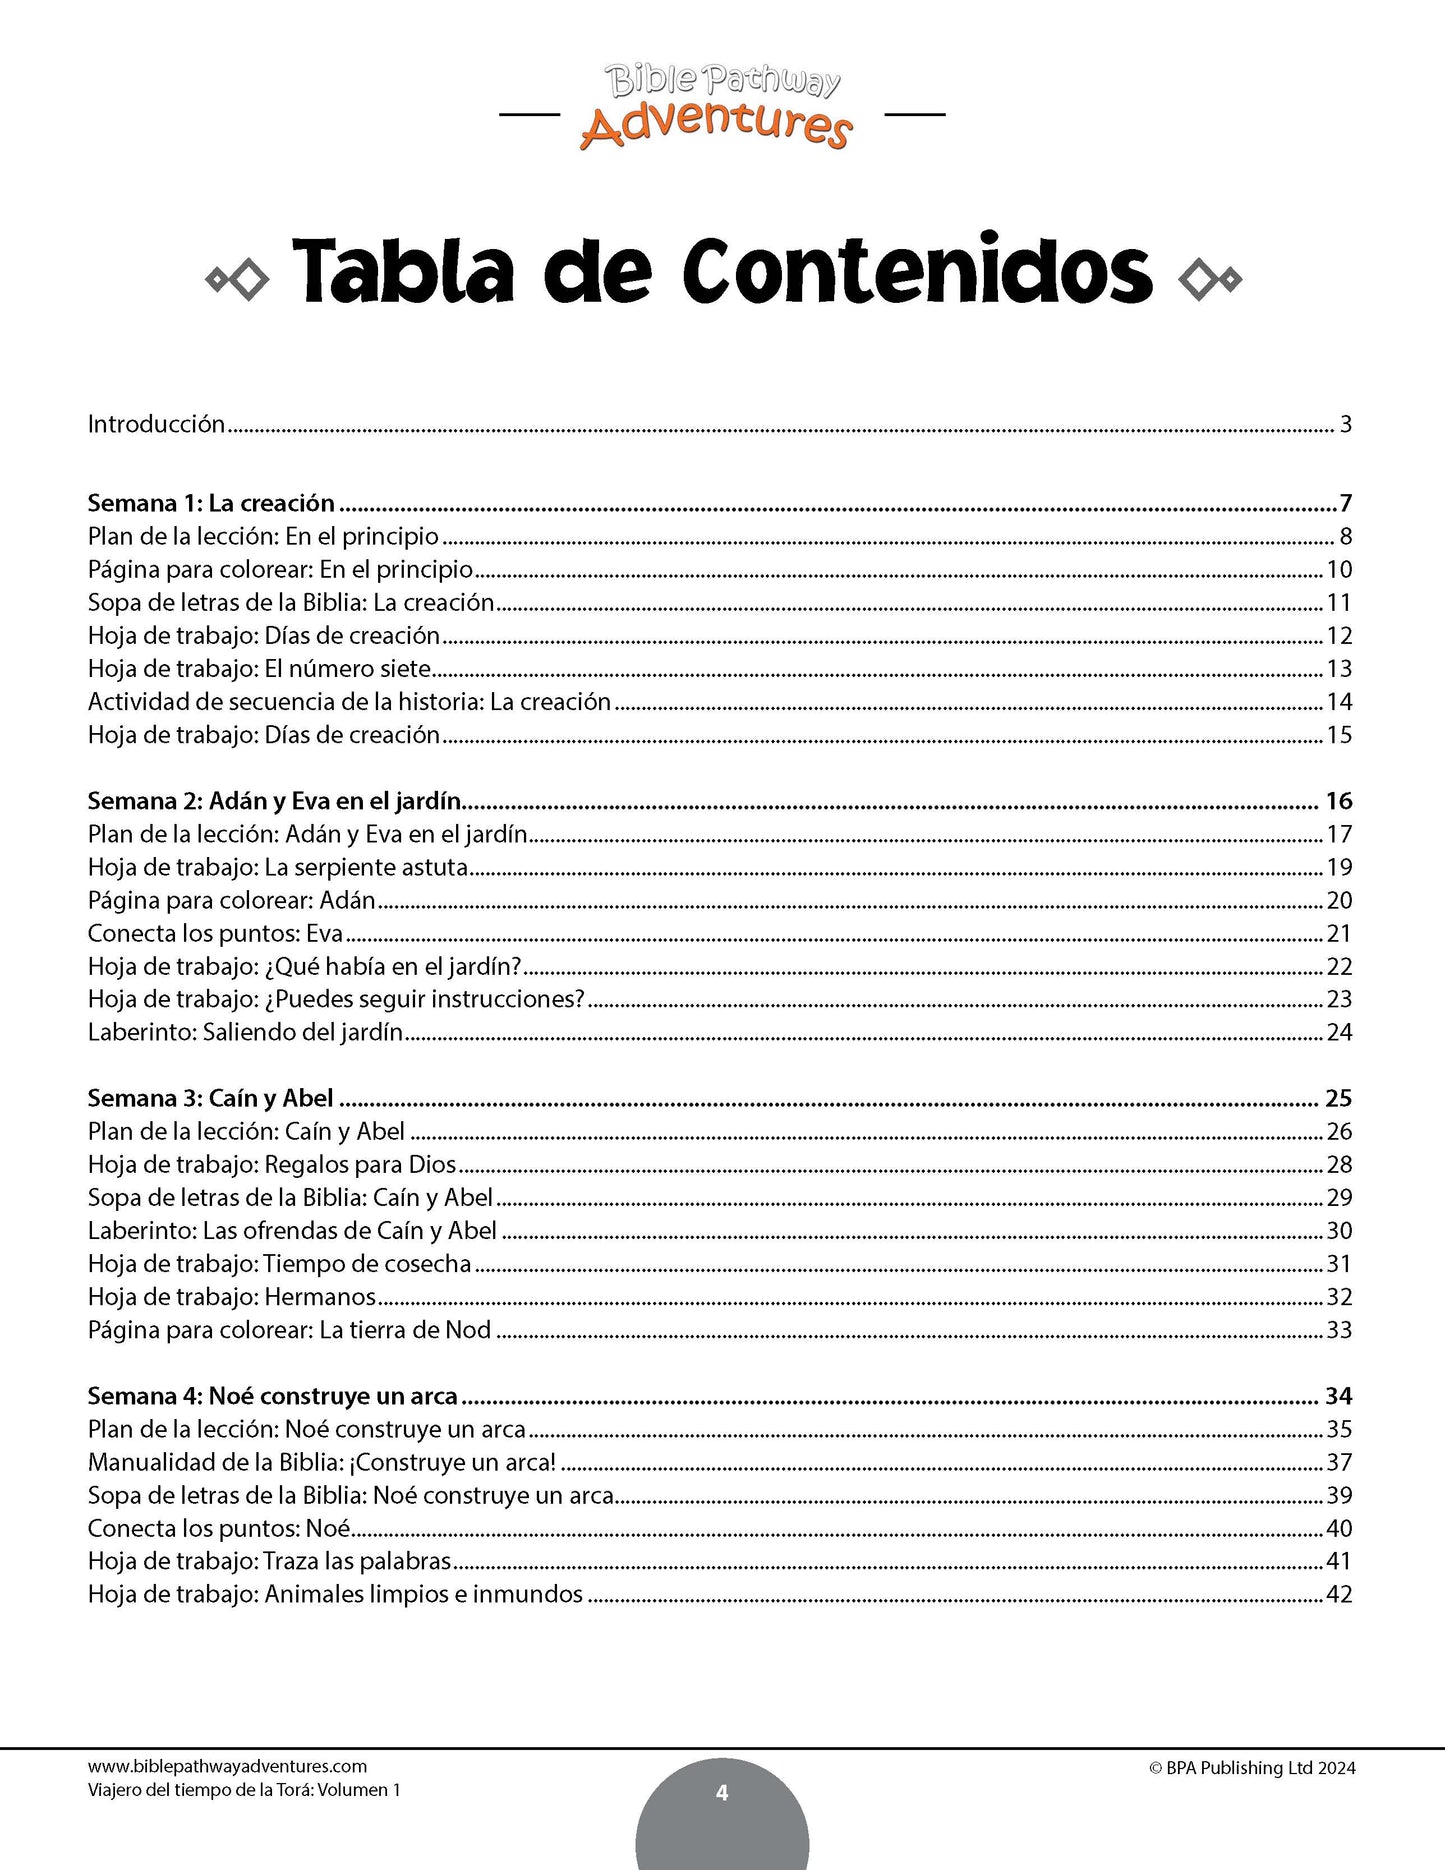 Viajero del tiempo de la Torá: Libro de actividades para principiantes - Volumen 1